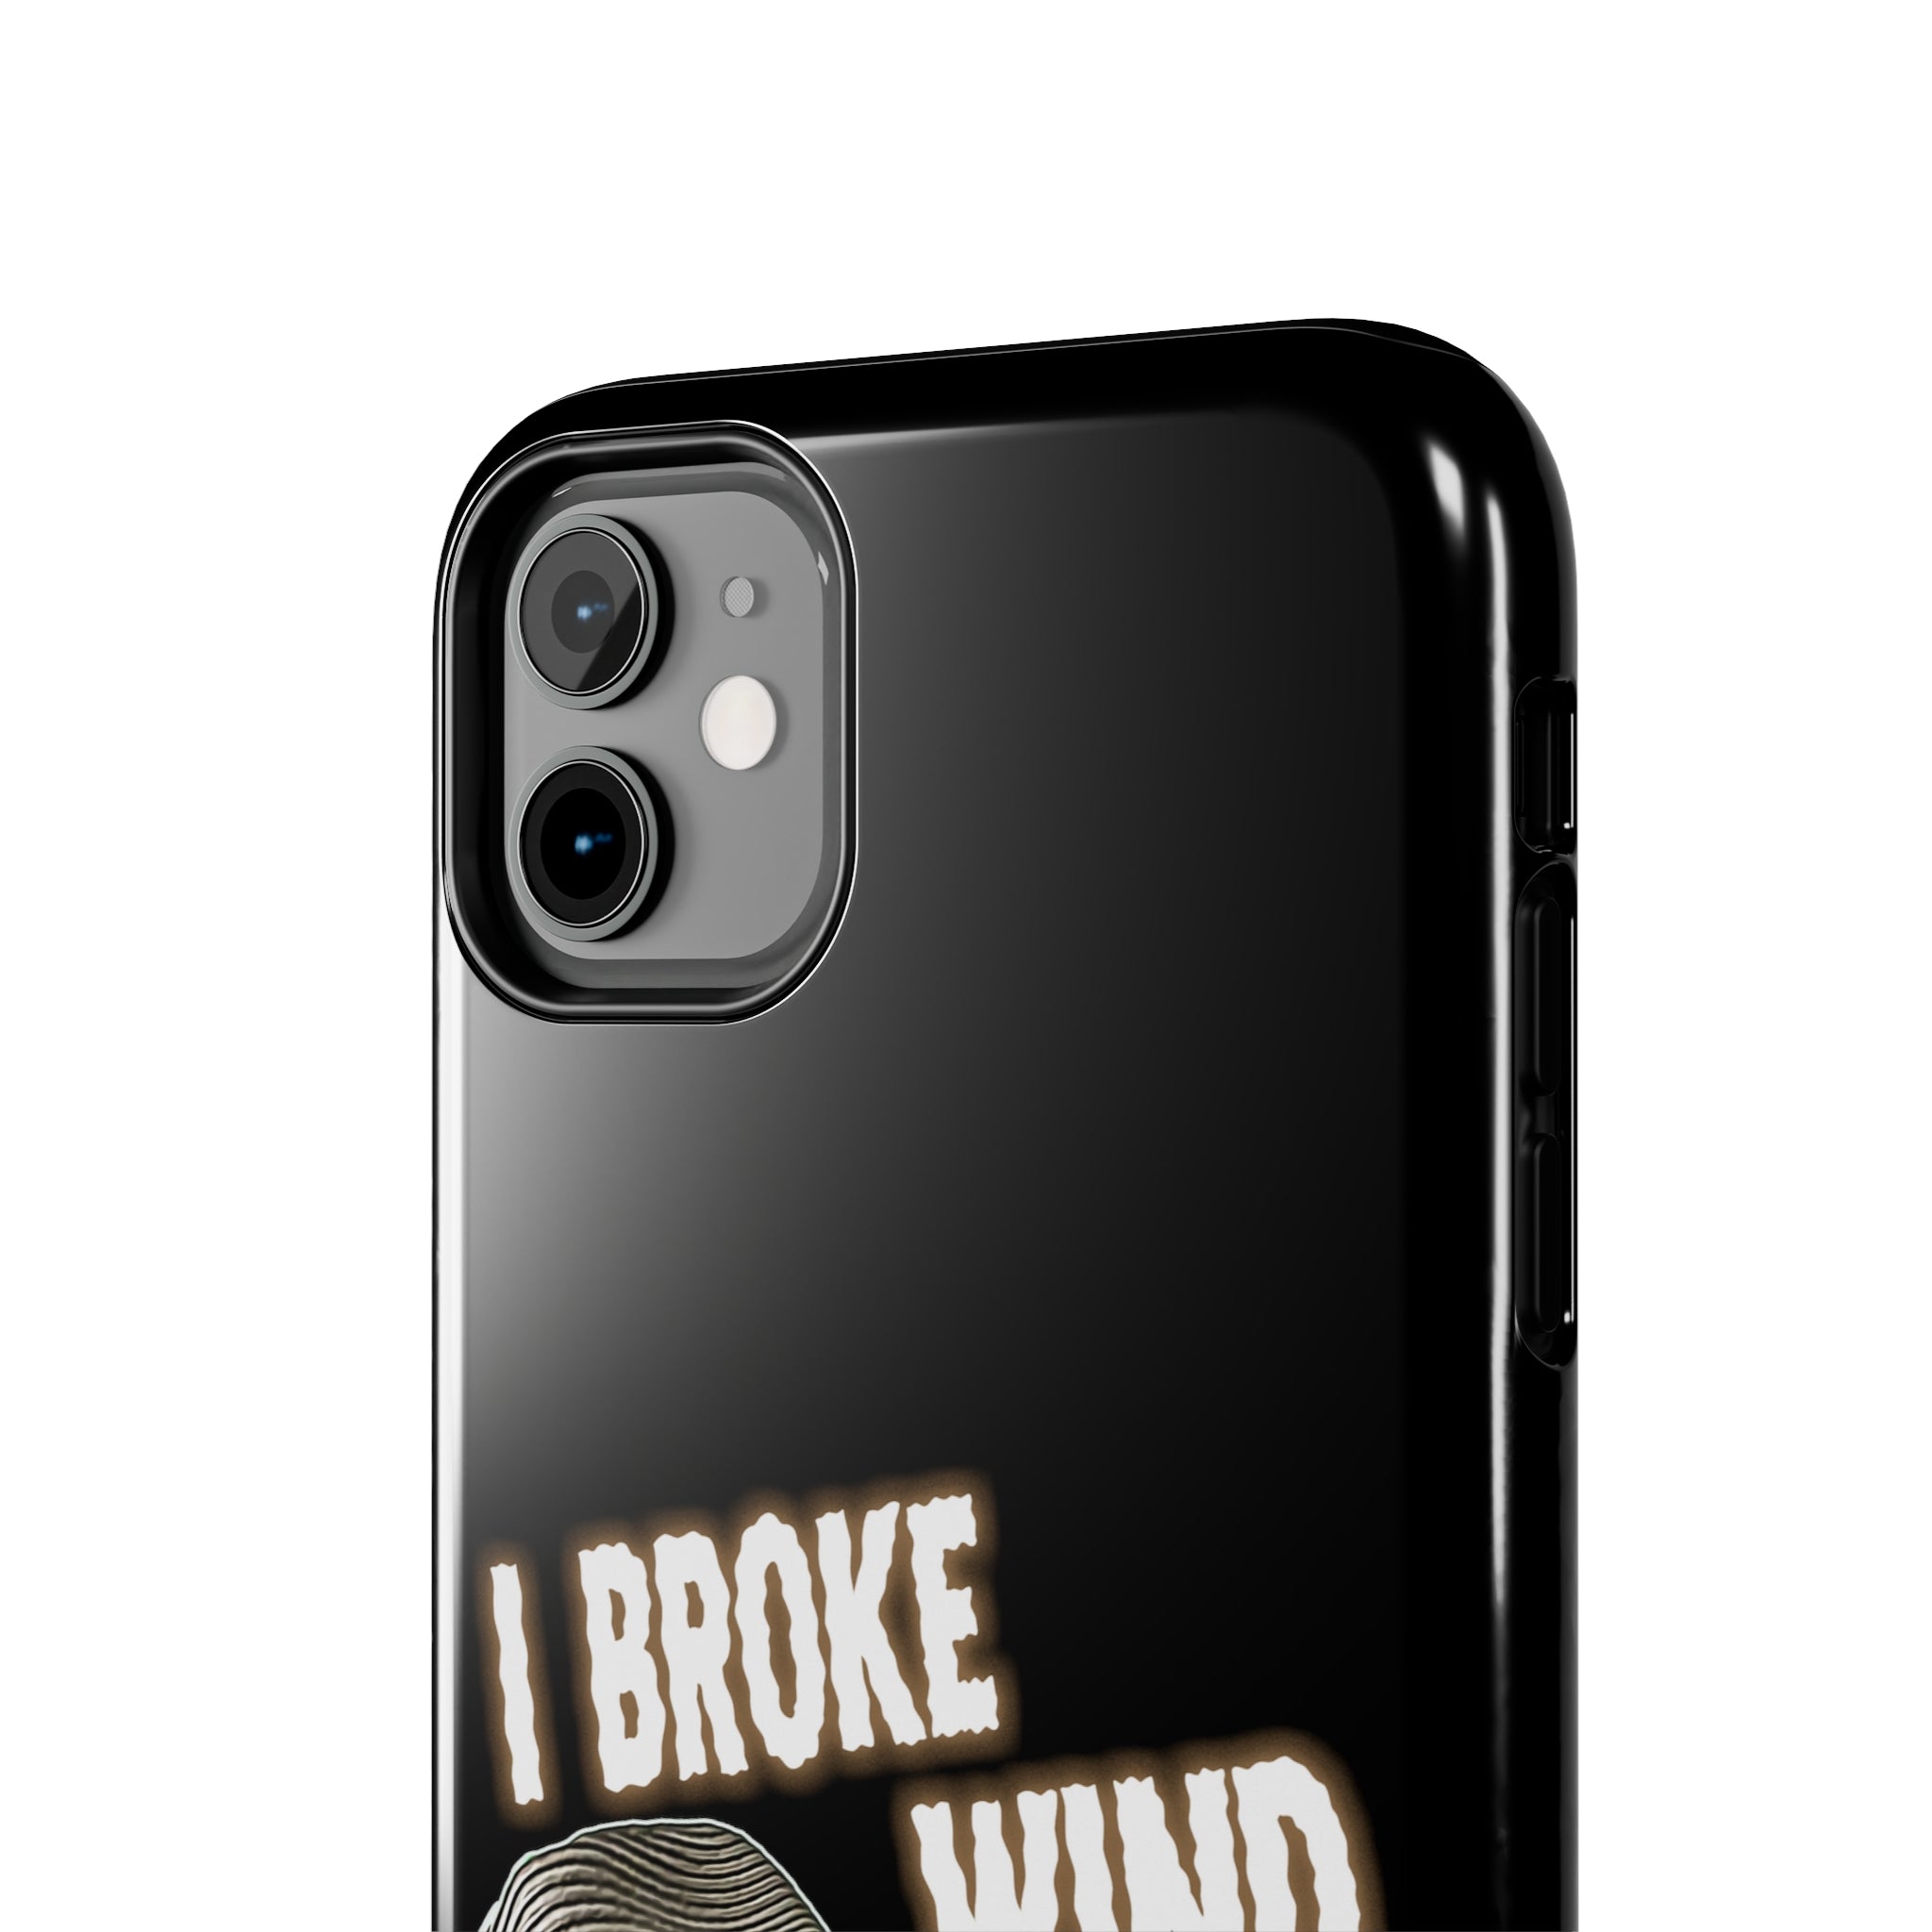 I BROKE WIND Tough Phone Cases